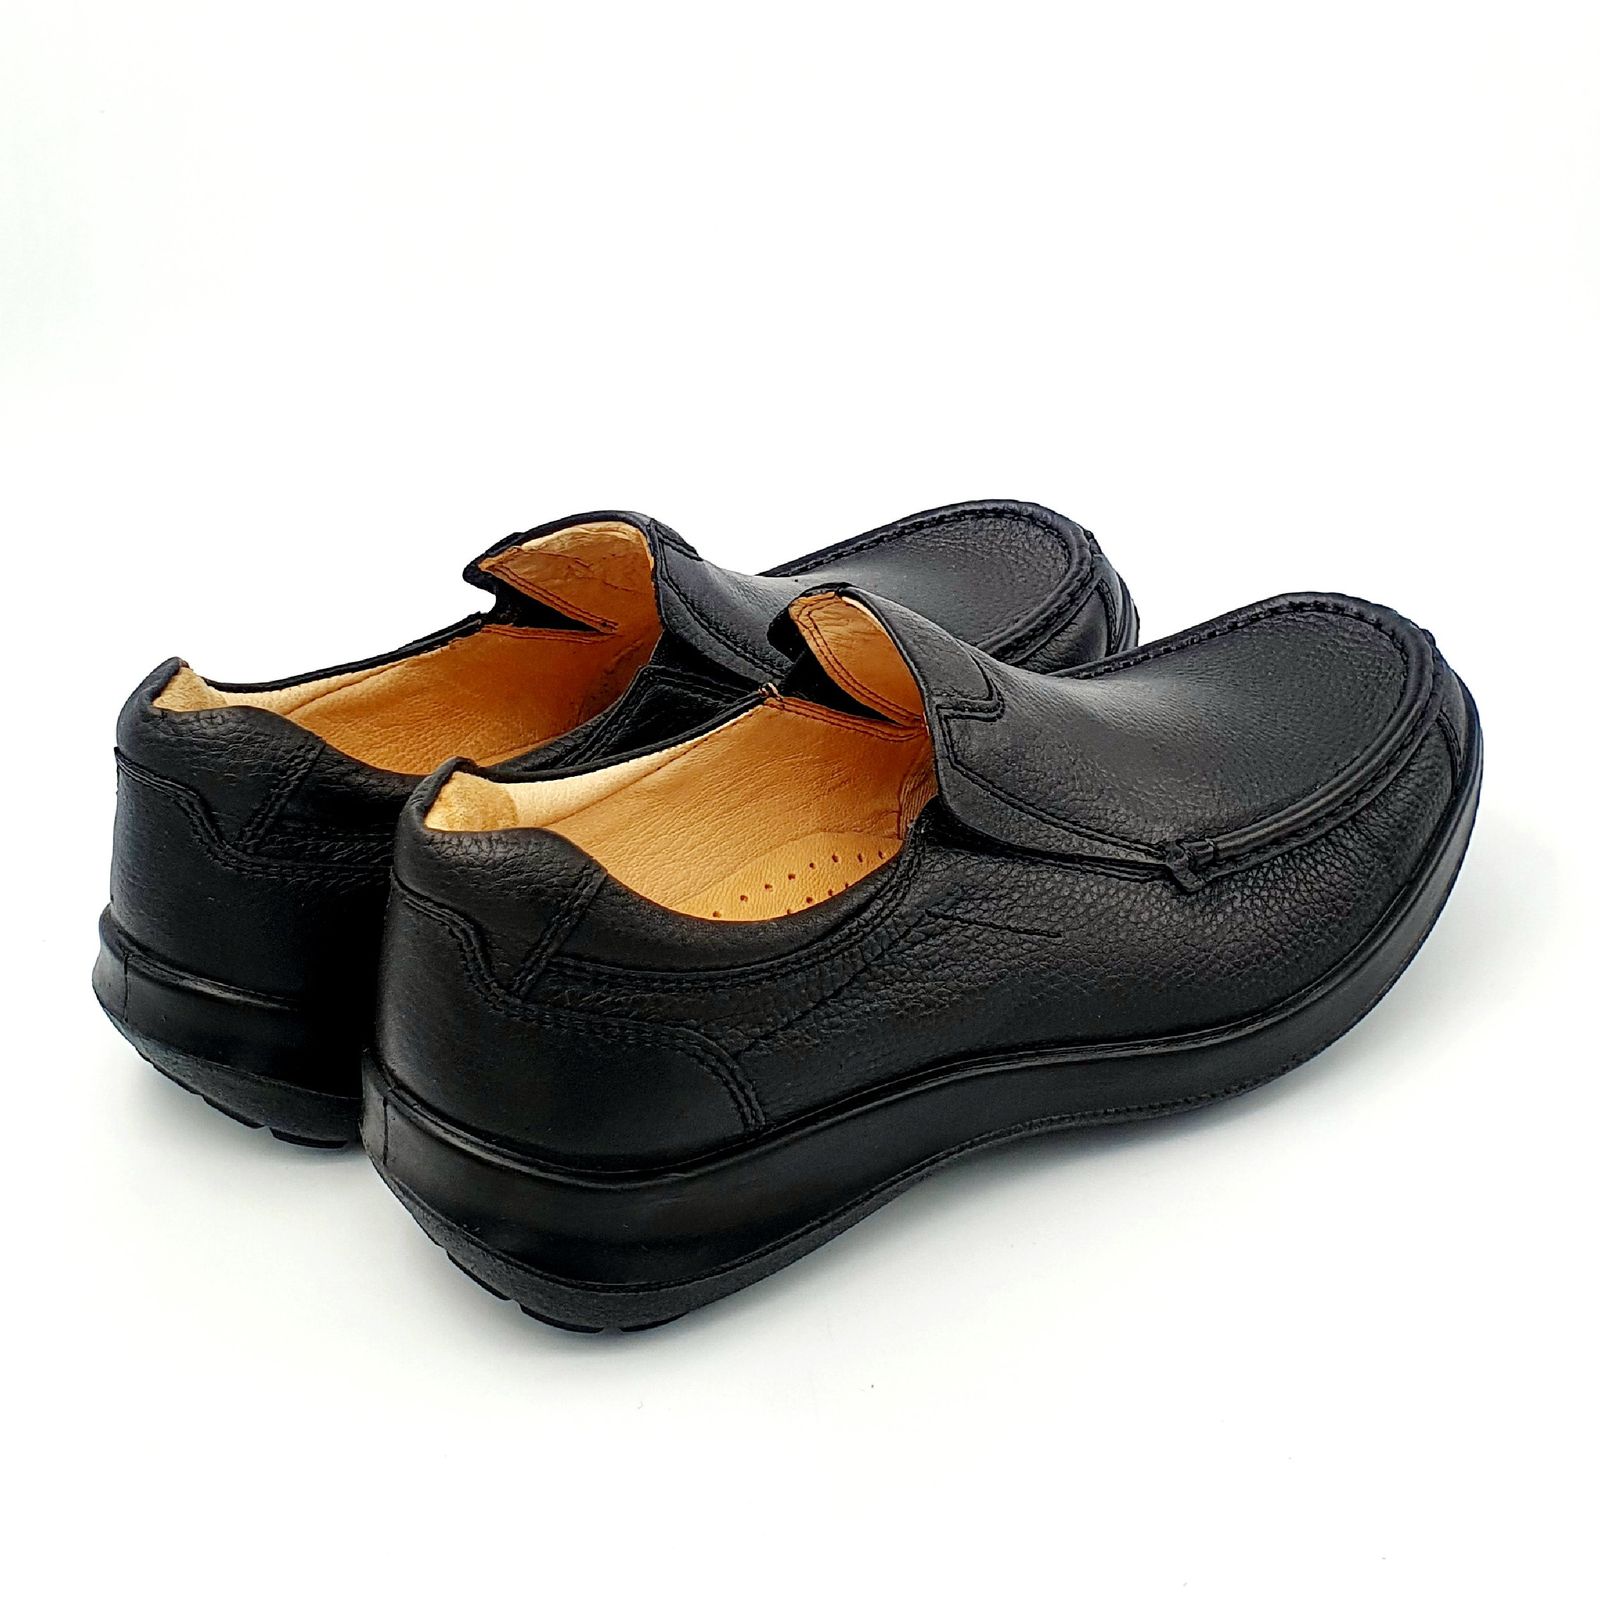 کفش روزمره مردانه شرکت کفش البرز مدل KV کد 2383-2 -  - 3